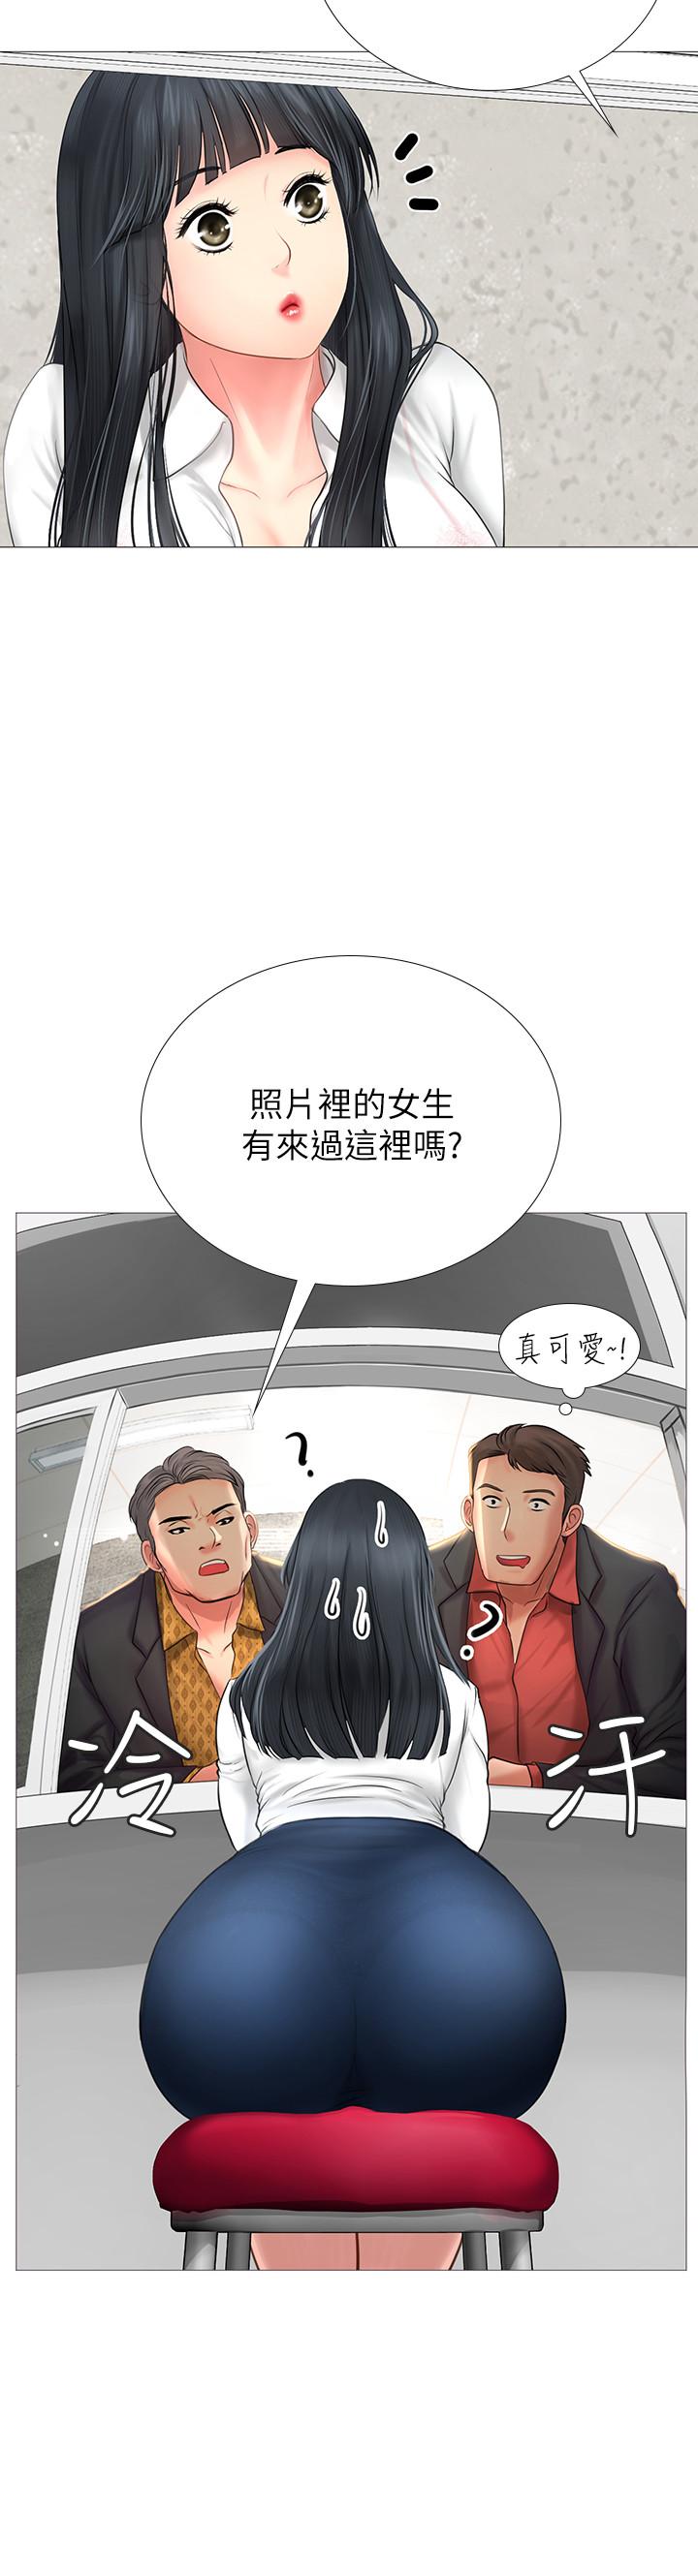 韩国污漫画 享樂補習街 第7话-目睹香艳刺激的场景 33